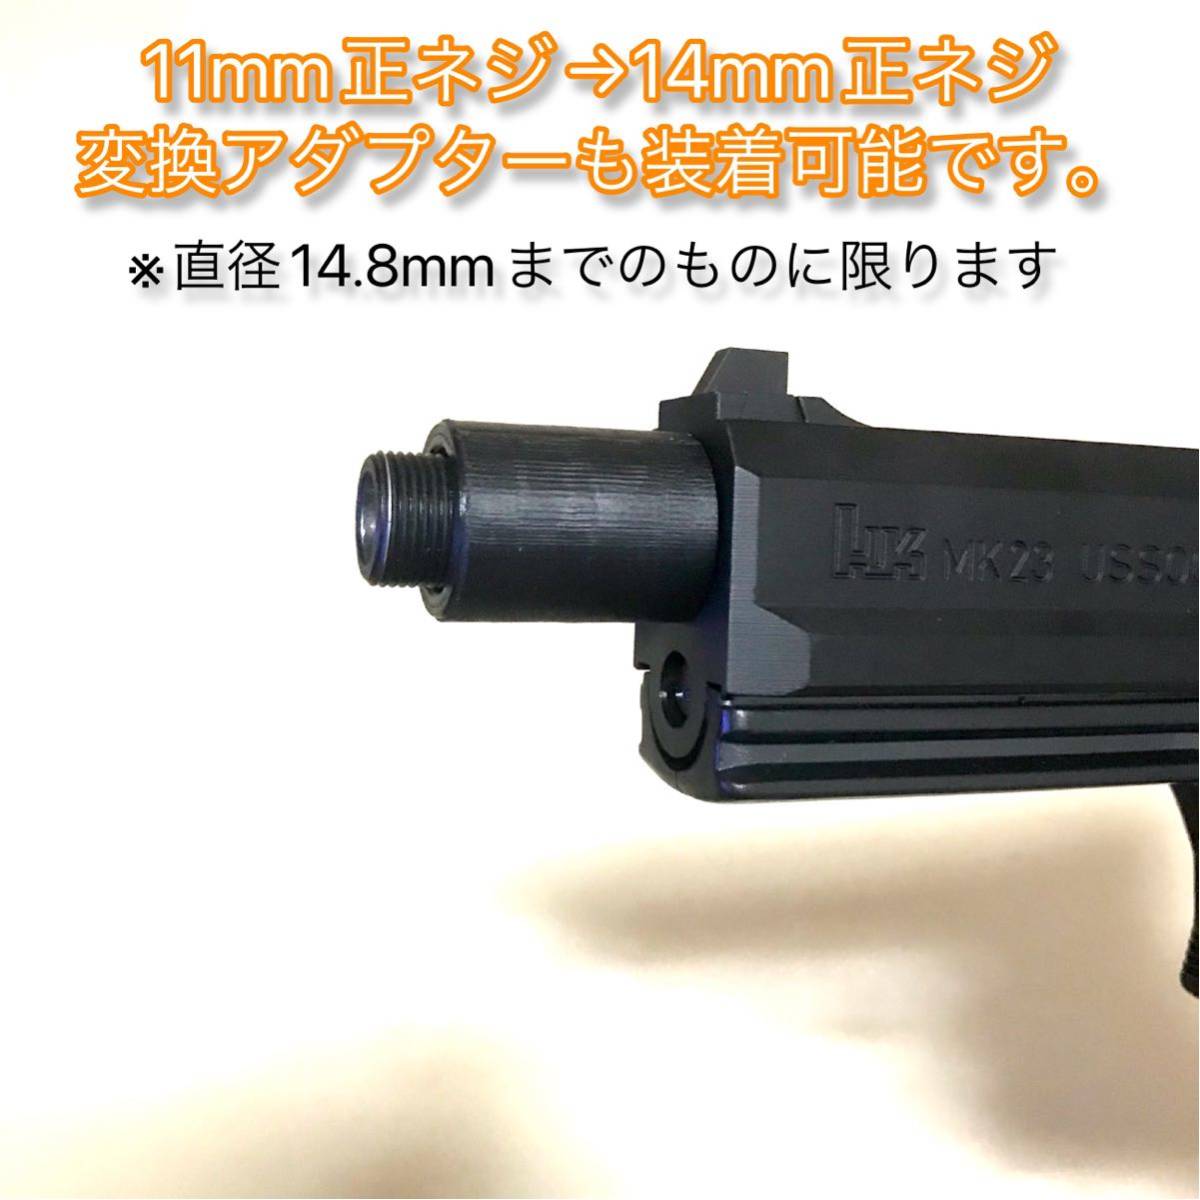 16mm正ネジ→11mm正ネジ変換アダプター SOCOM MK23の画像4